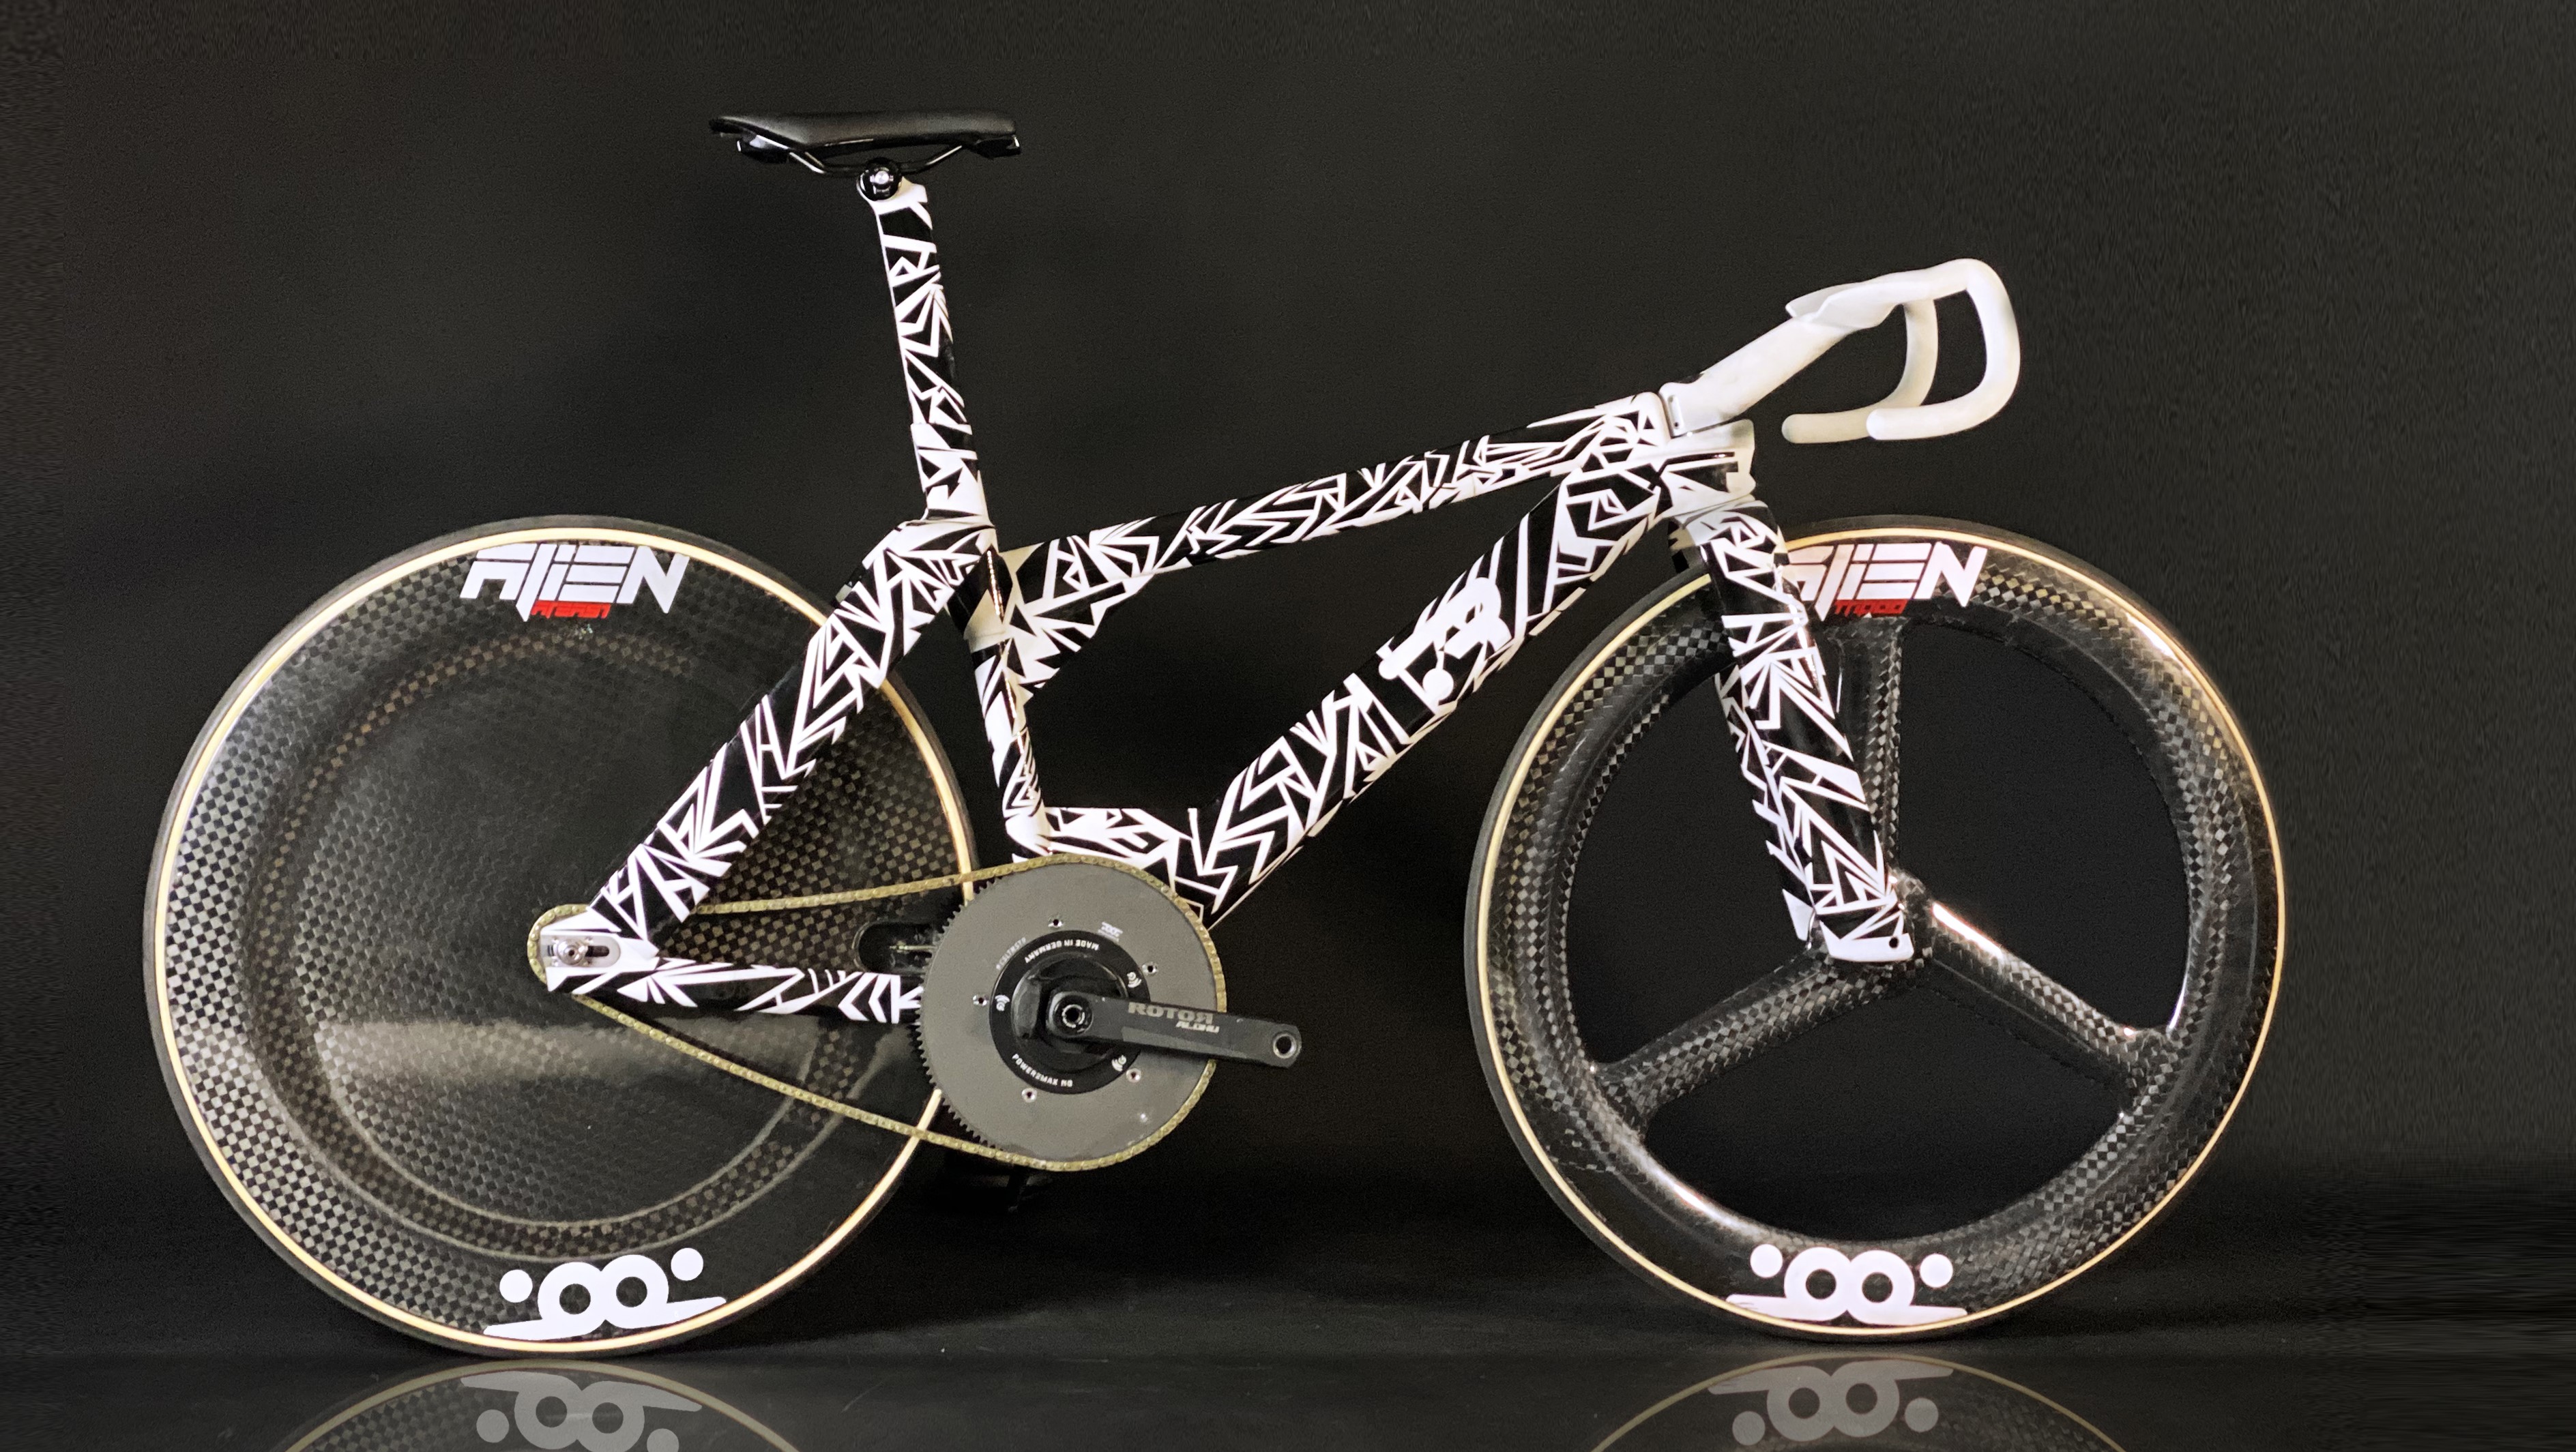 Pinarello creates 3D-printed Bolide bike for Filippo Ganna Hour